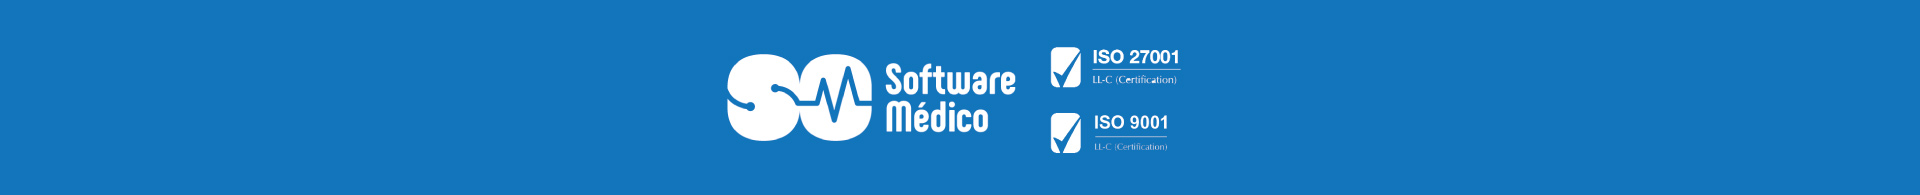 software médico